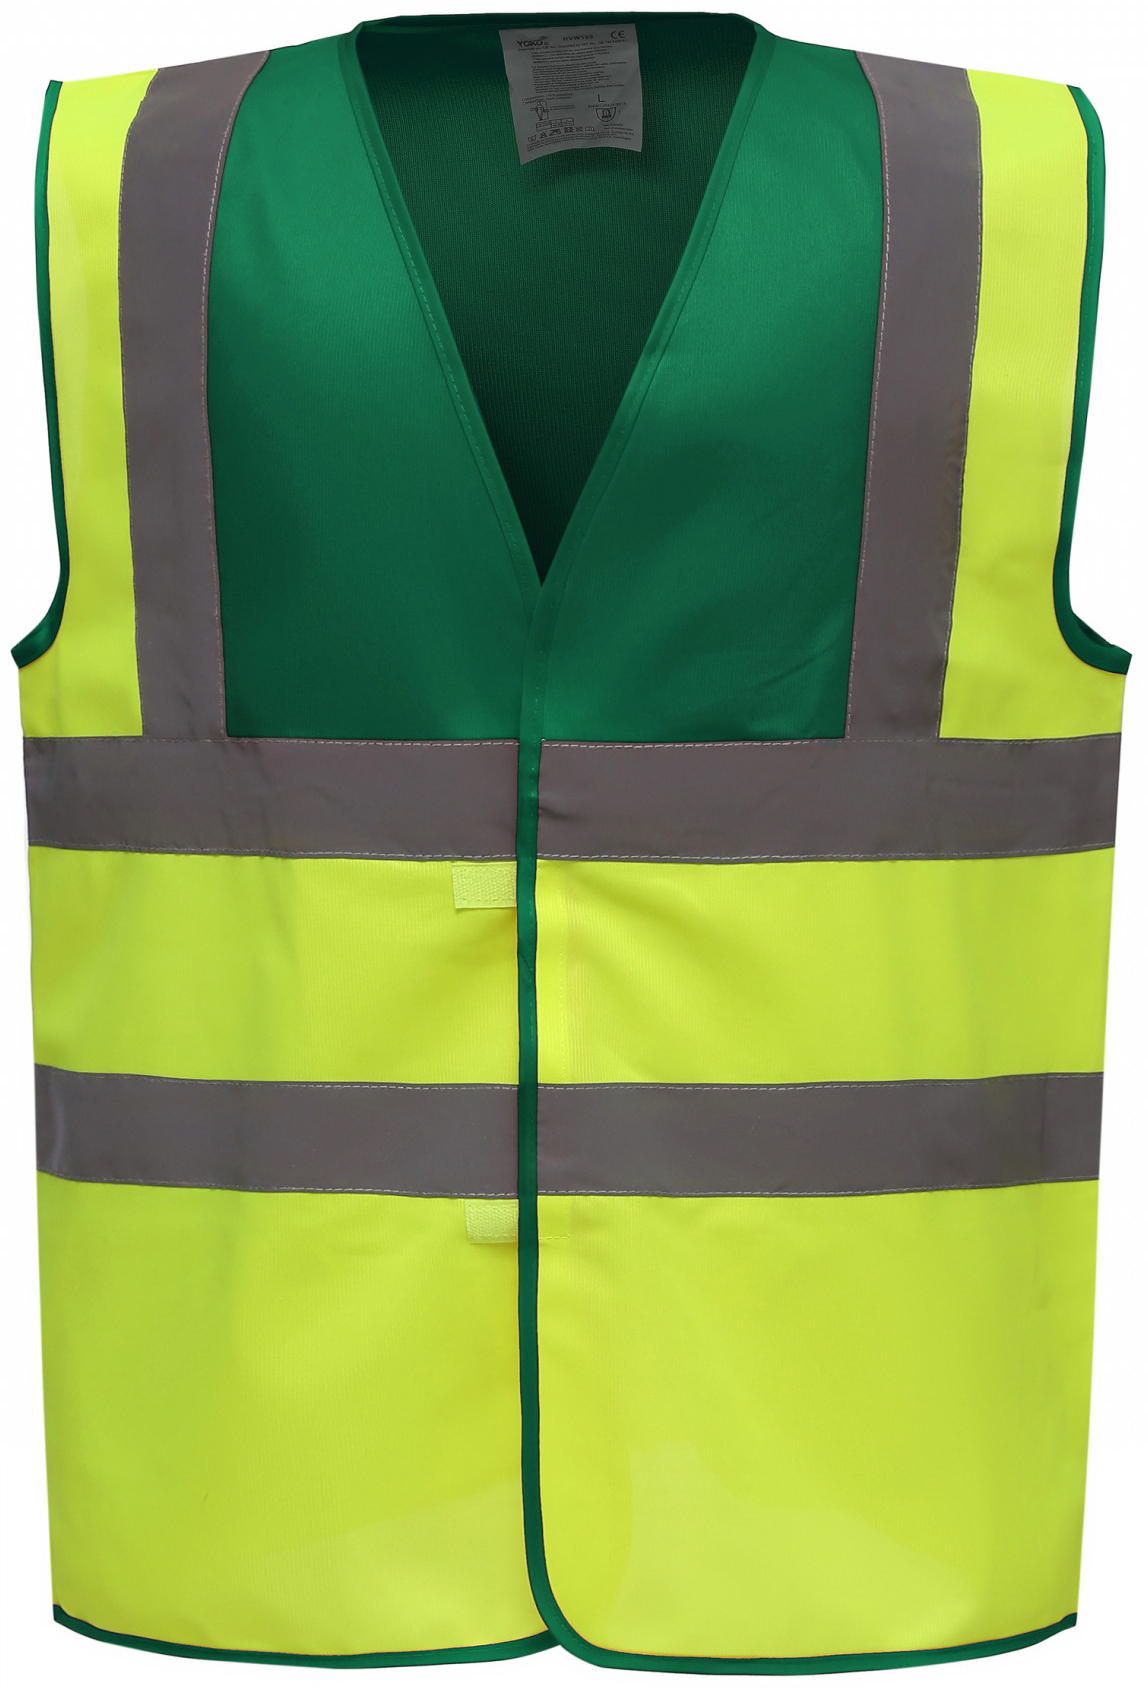 Paramedic Green/Giallo Fluo